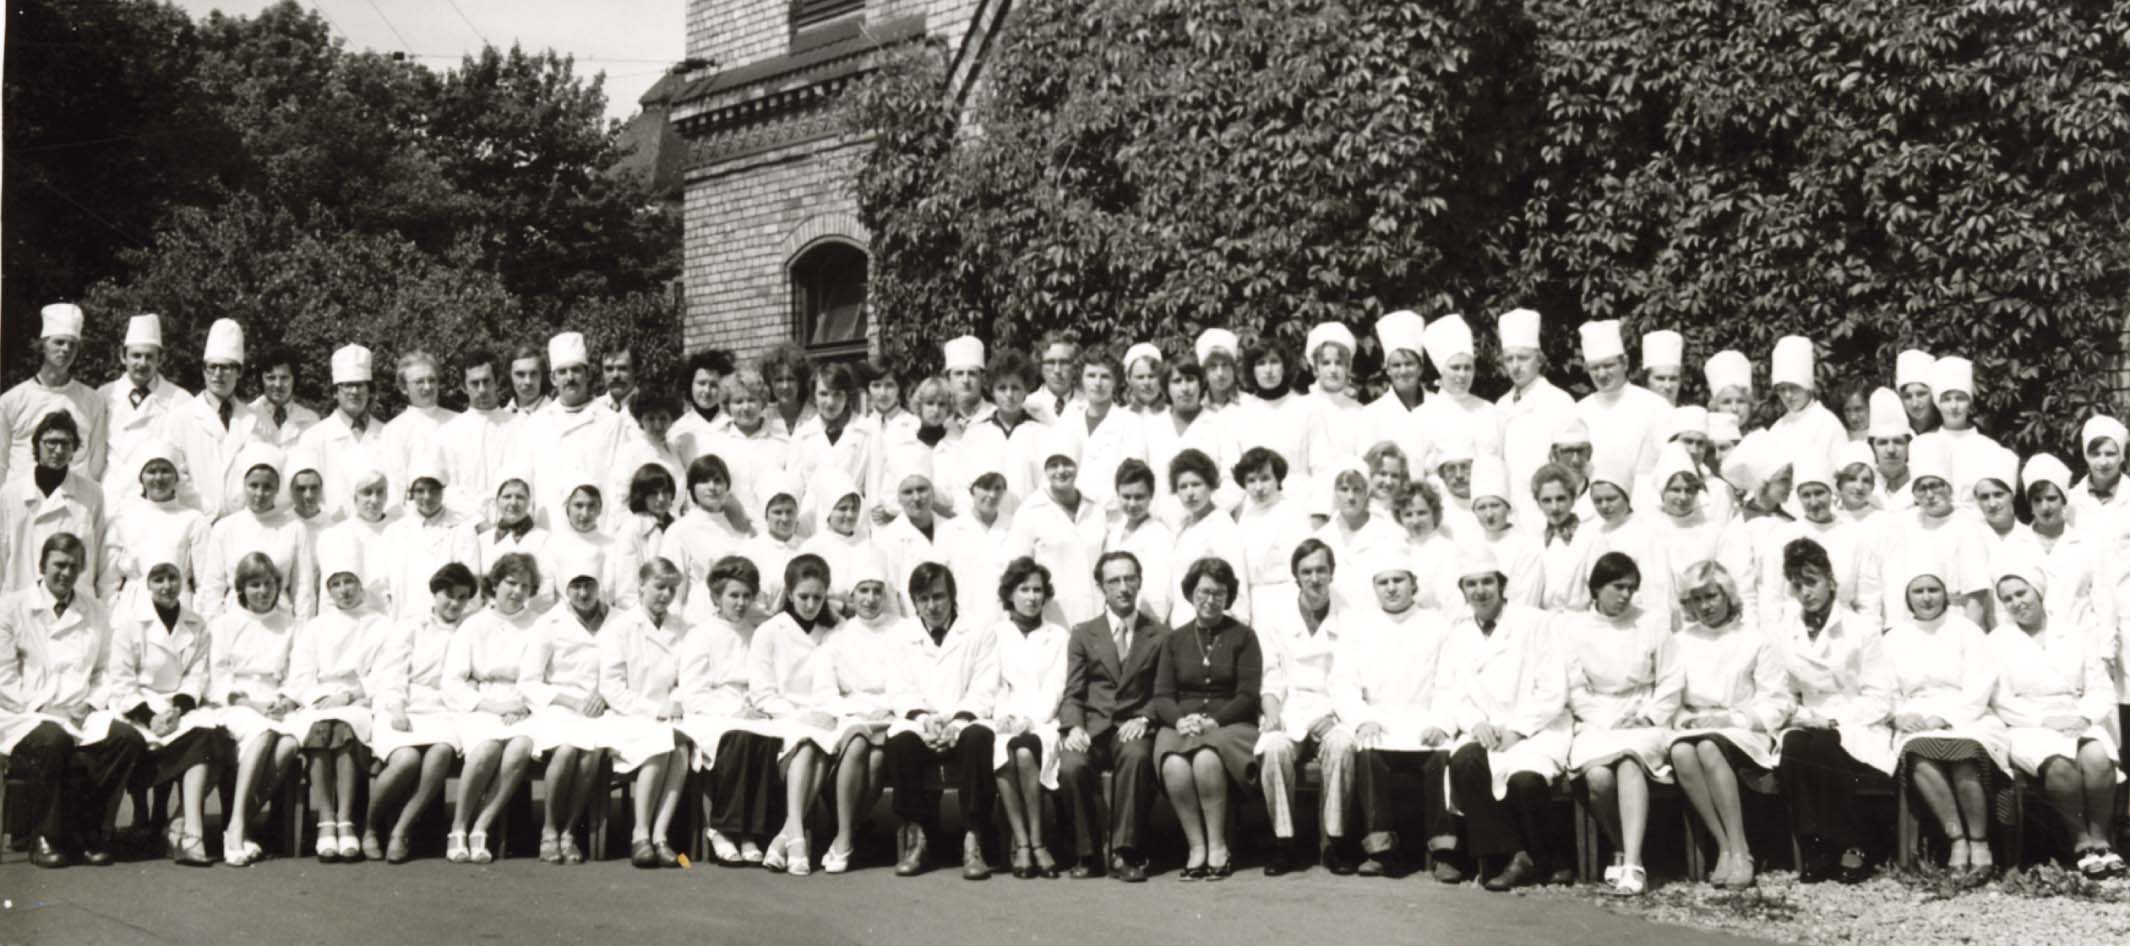 Rīgas Medicīnas institūta 6. kurss, 1978. gads. “Tie ir tikai krievu plūsmas studenti, starp viņiem arī mans nākamais vīrs – no kreisās puses 3. rindā pirmais. Liela daļa kursabiedru nestrādā medicīnā, daļa aizbraukusi uz Krieviju, Izraēlu.” Jeļena Derova